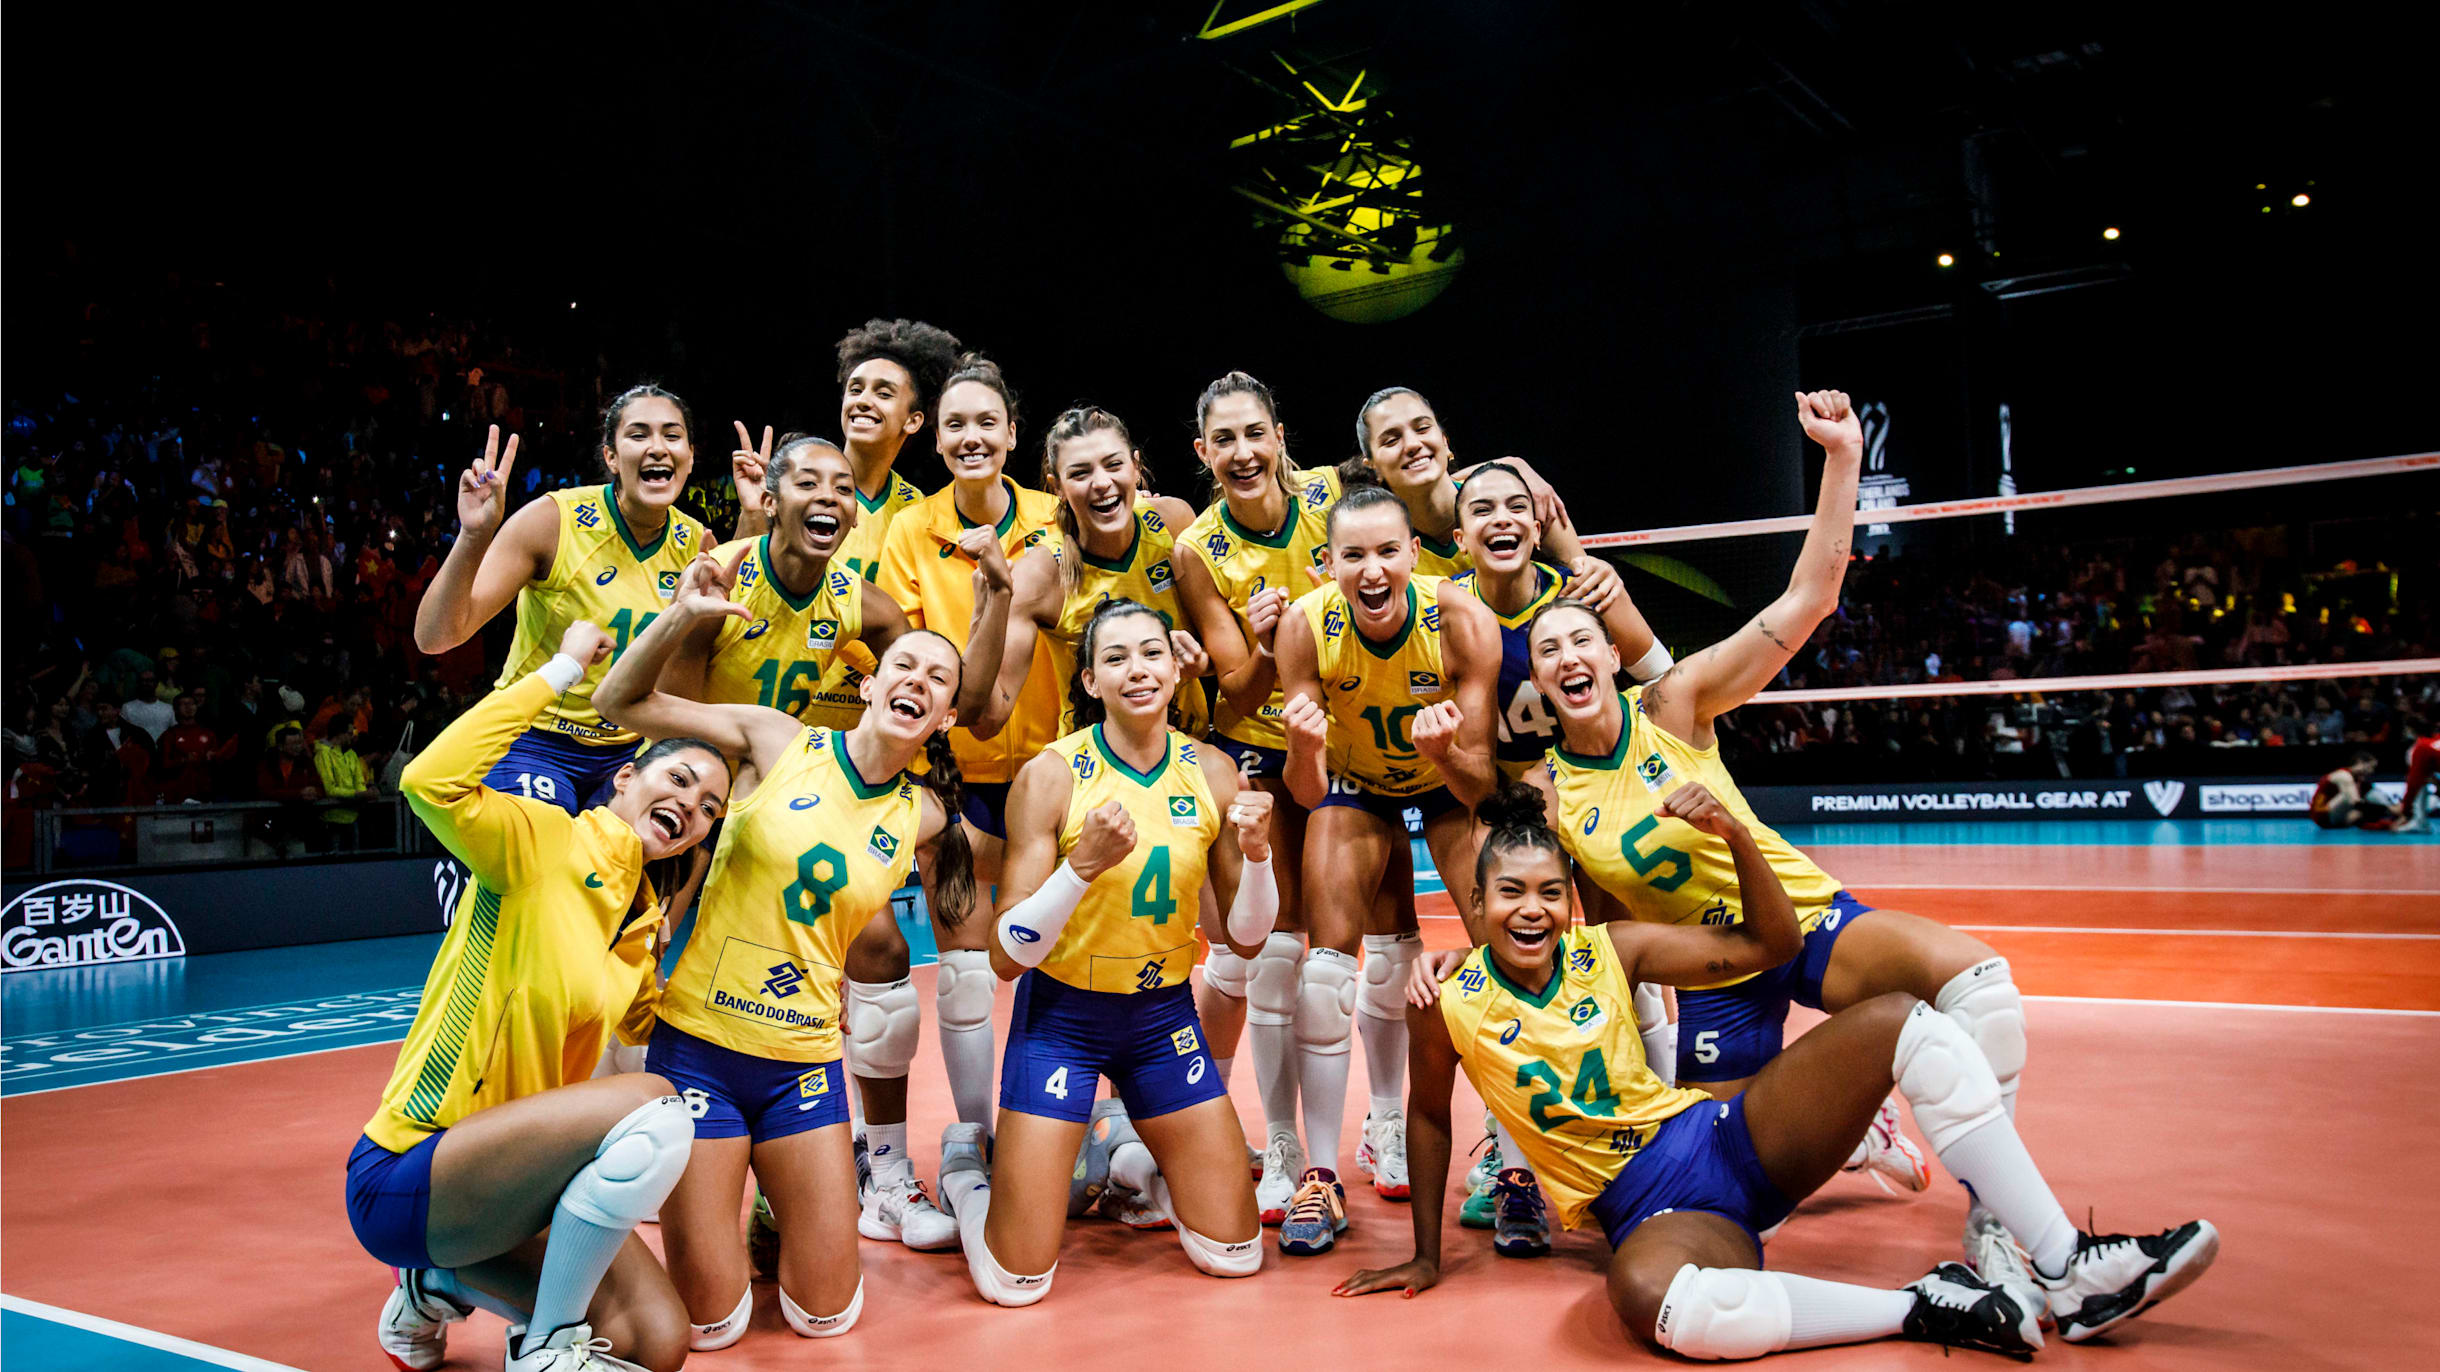 Assista ao vivo: Brasil x Japão pelo Campeonato Mundial de Vôlei feminino